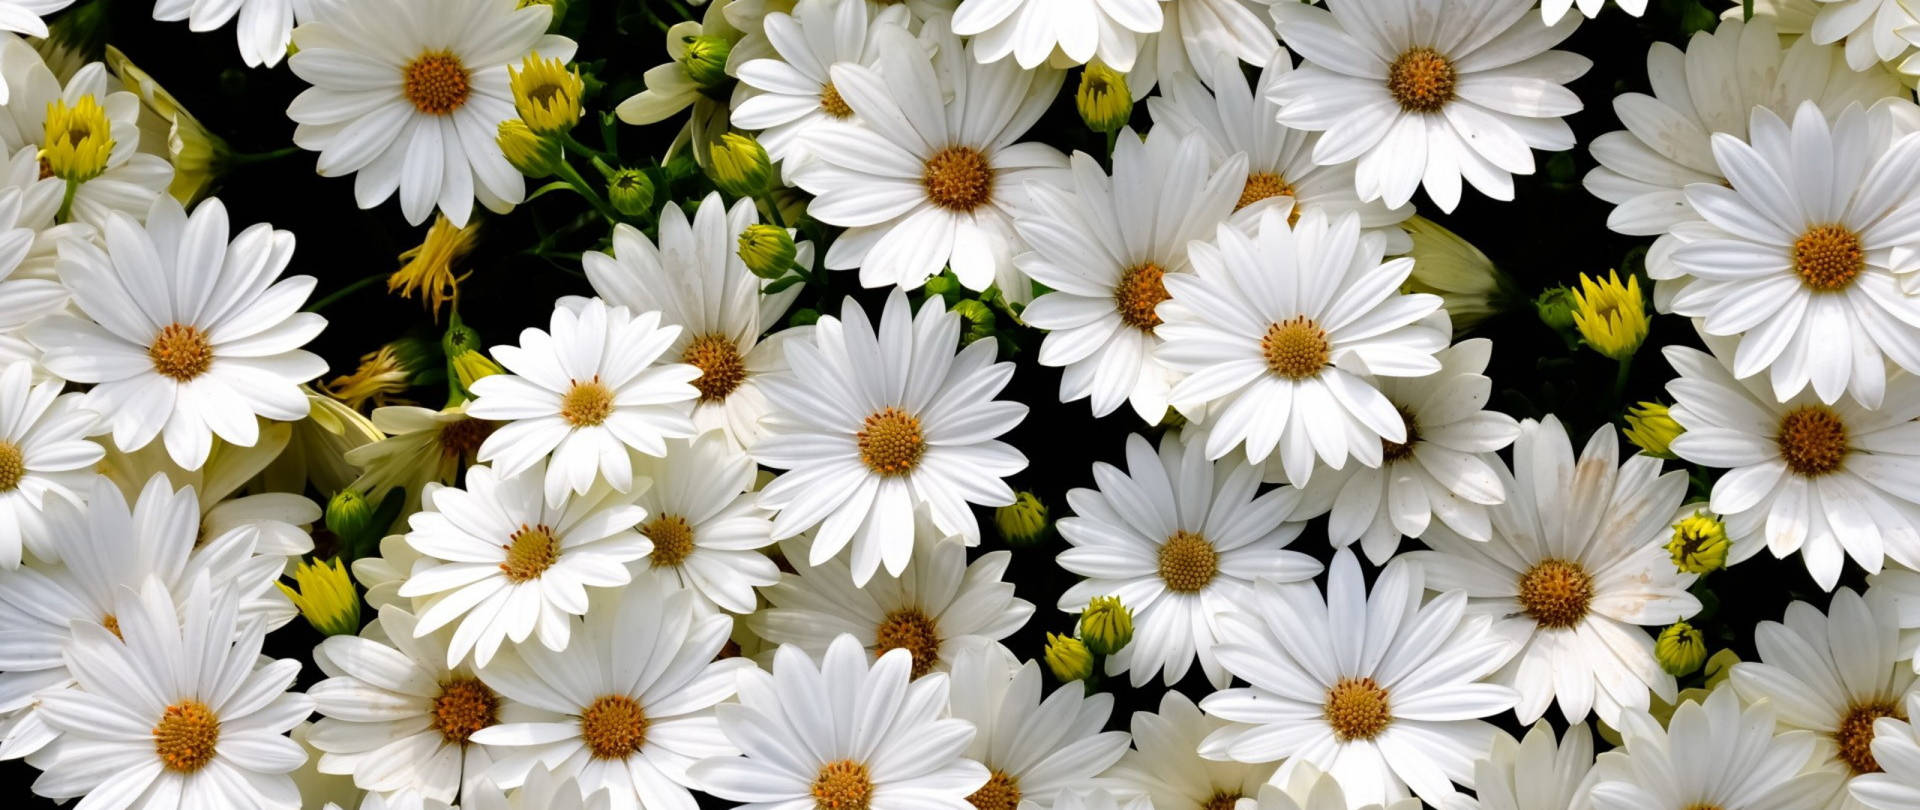 Làm mới màn hình điện thoại của bạn với hình nền hoa Daisy miễn phí. Với sắc trắng tinh khôi và hương thơm dịu nhẹ, hoa Daisy mang đến vẻ đẹp thanh lịch và tươi mới cho điện thoại của bạn. Hãy tải ngay hôm nay và trang trí màn hình của mình với hình nền hoa Daisy miễn phí.